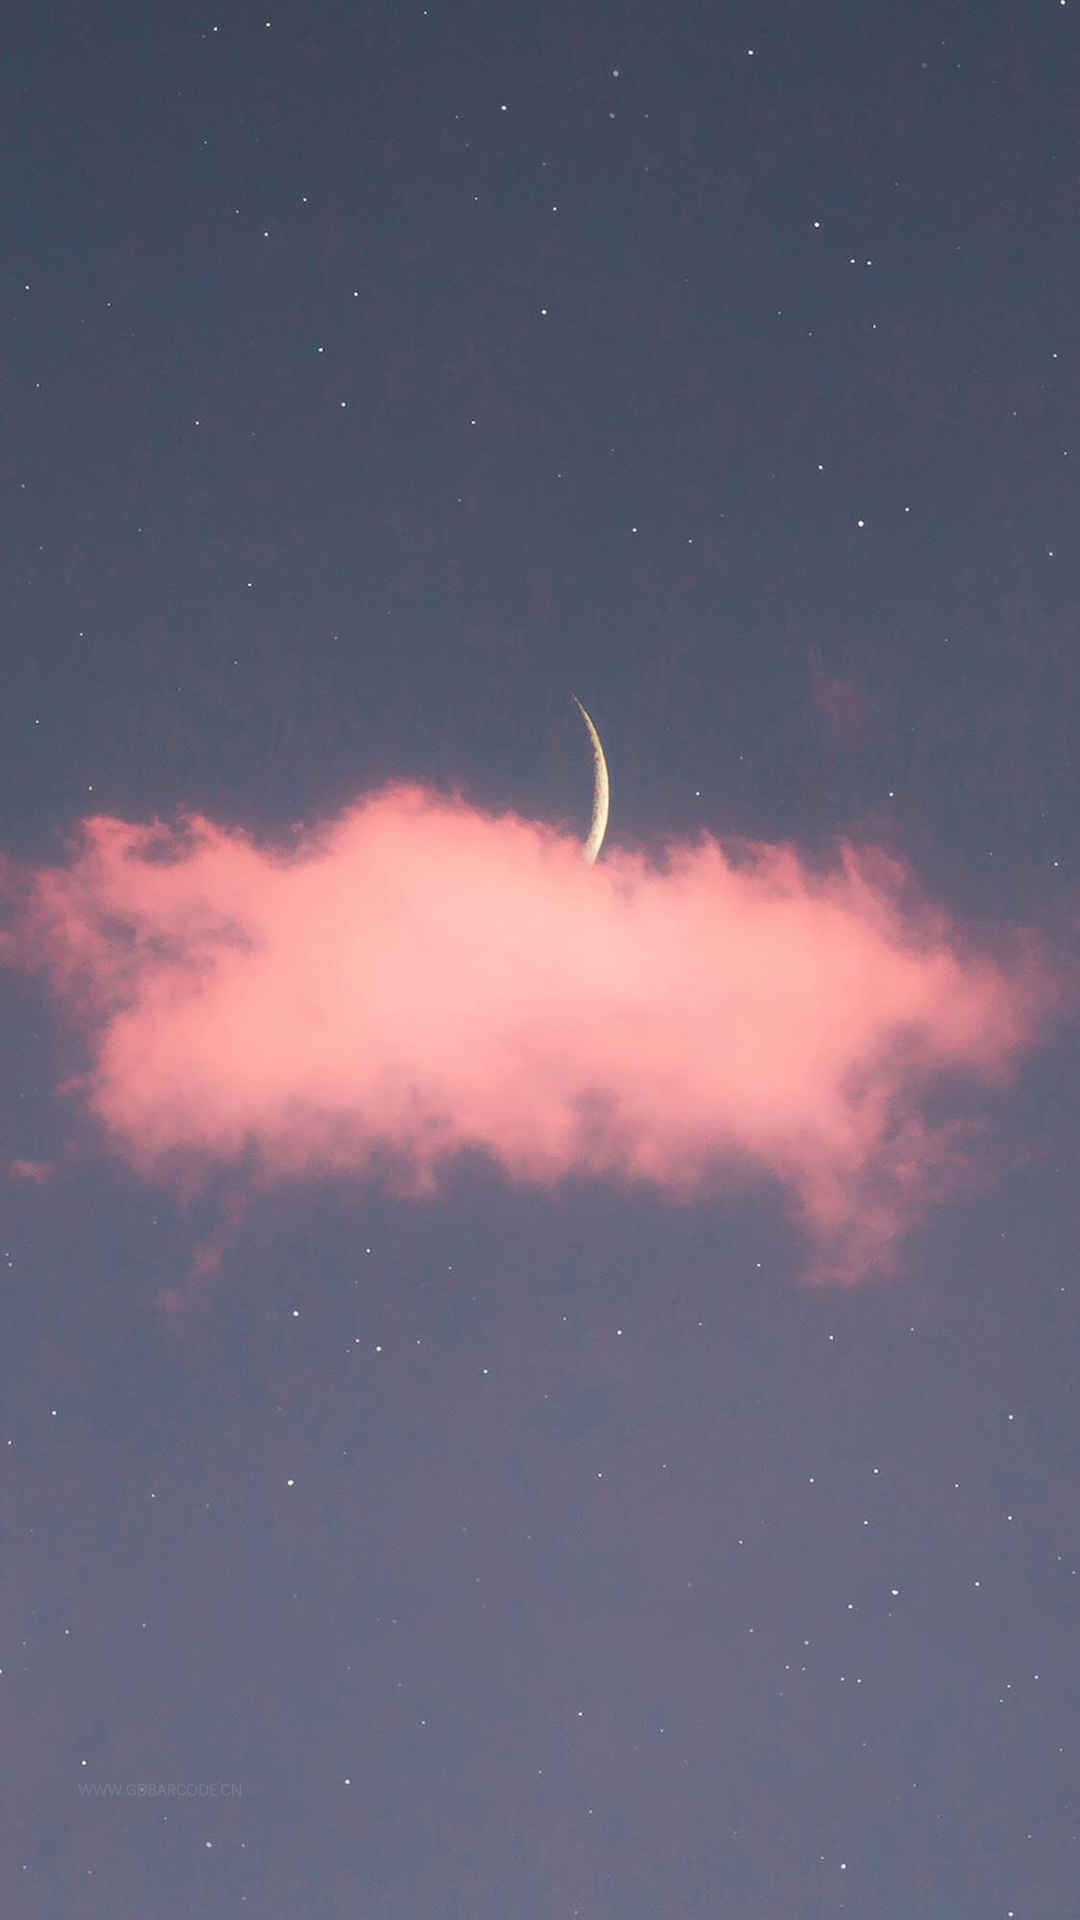 浪漫夜空下的星月云霞风景手机壁纸